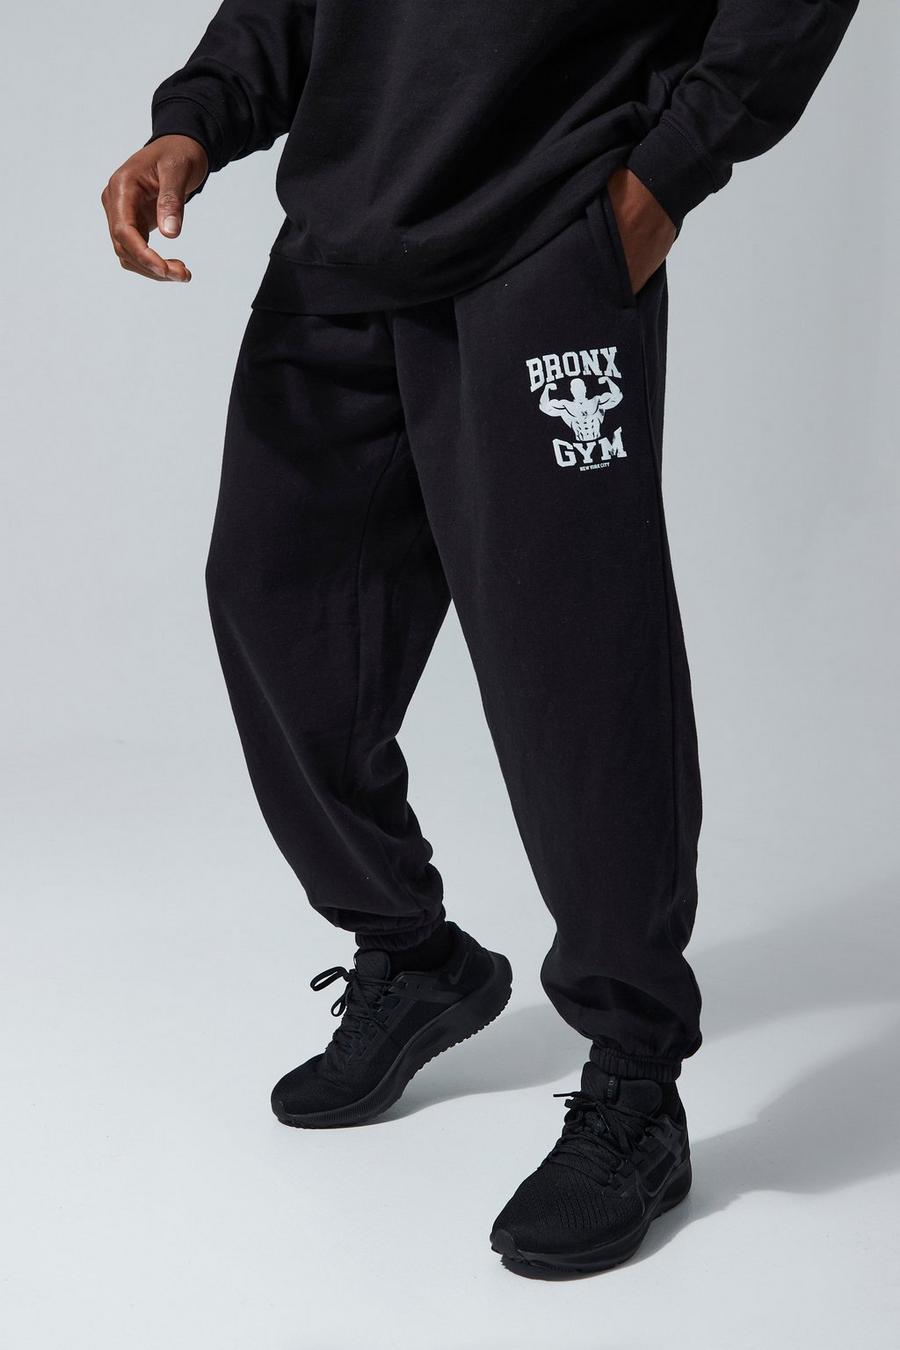 שחור מכנסי ריצה אוברסייז ספורטיביים לחדר הכושר עם כיתוב Bronx מסדרת Man image number 1